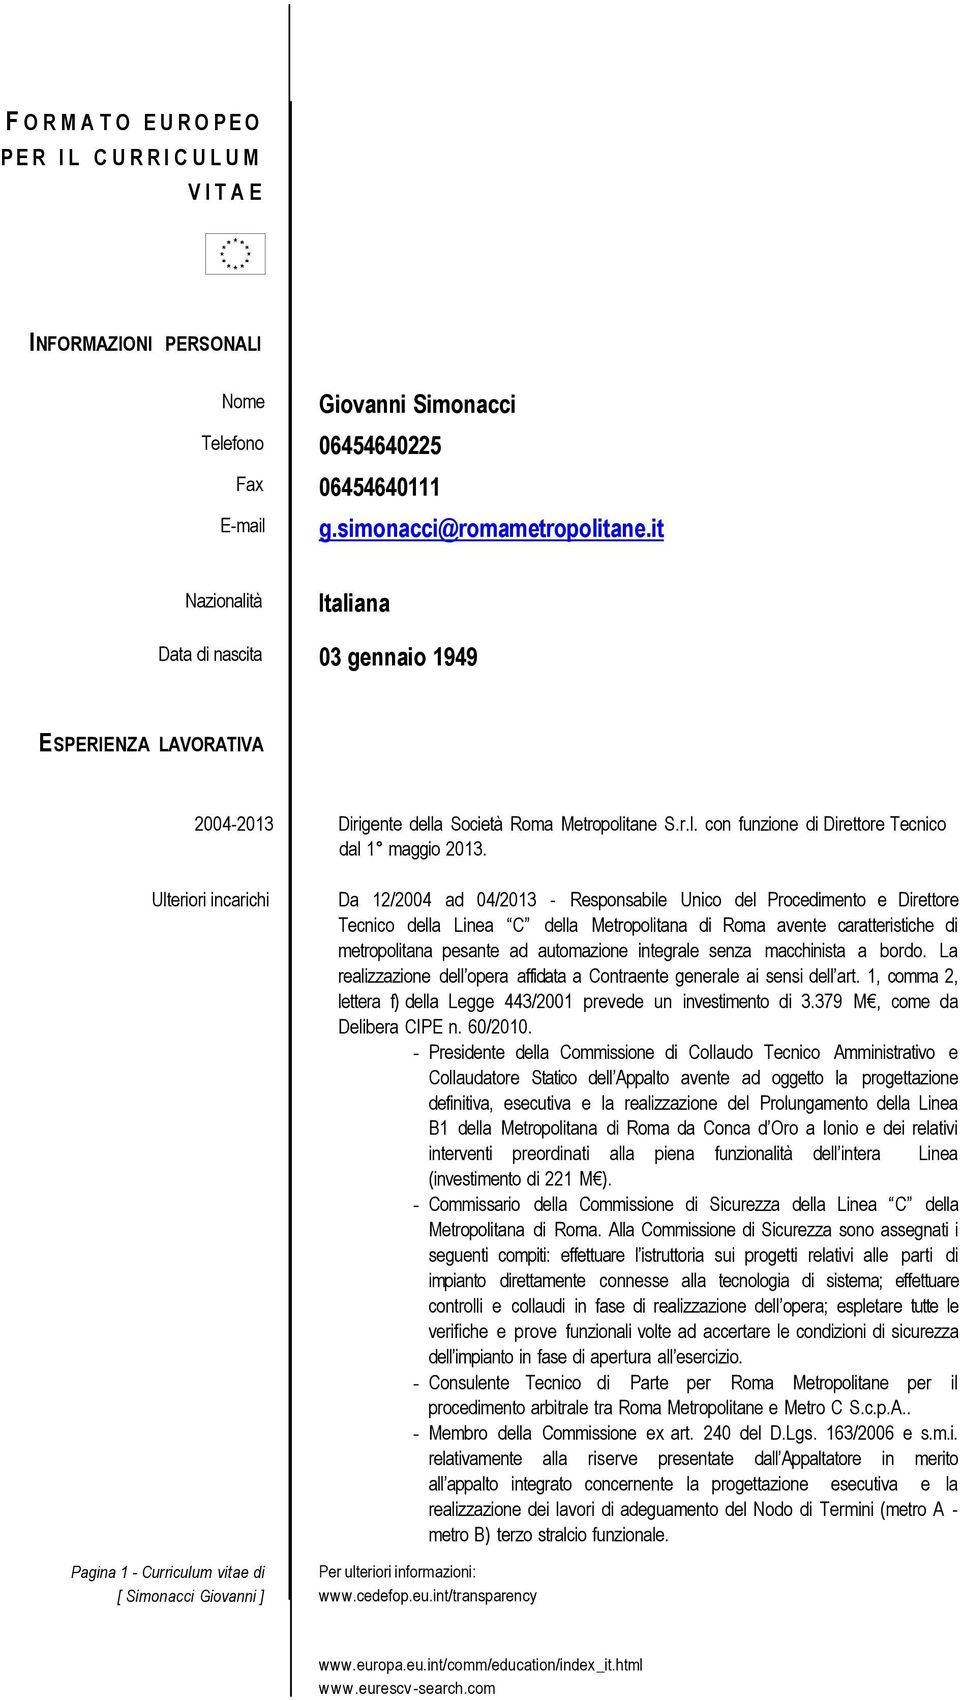 Ulteriori incarichi Pagina 1 - Curriculum vitae di Da 12/2004 ad 04/2013 - Responsabile Unico del Procedimento e Direttore Tecnico della Linea C della Metropolitana di Roma avente caratteristiche di